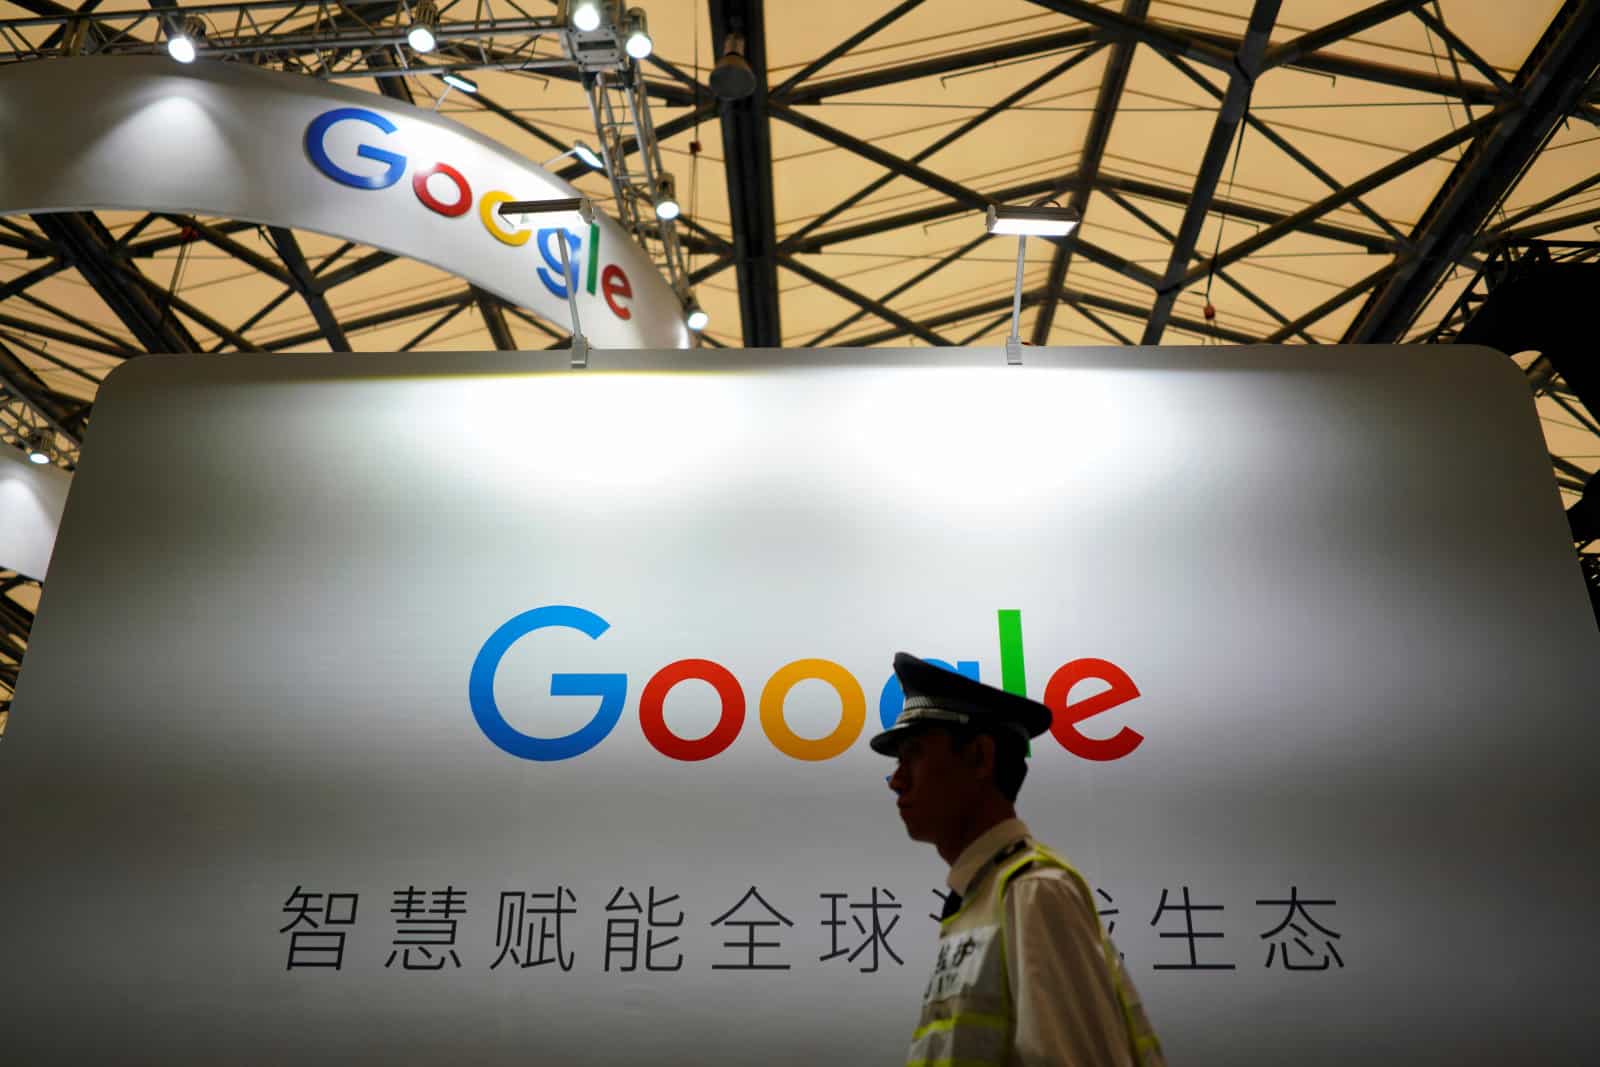 جوجل تؤكد مشروع Dragonfly وتتجنب الأسئلة المتعلقة بالصين